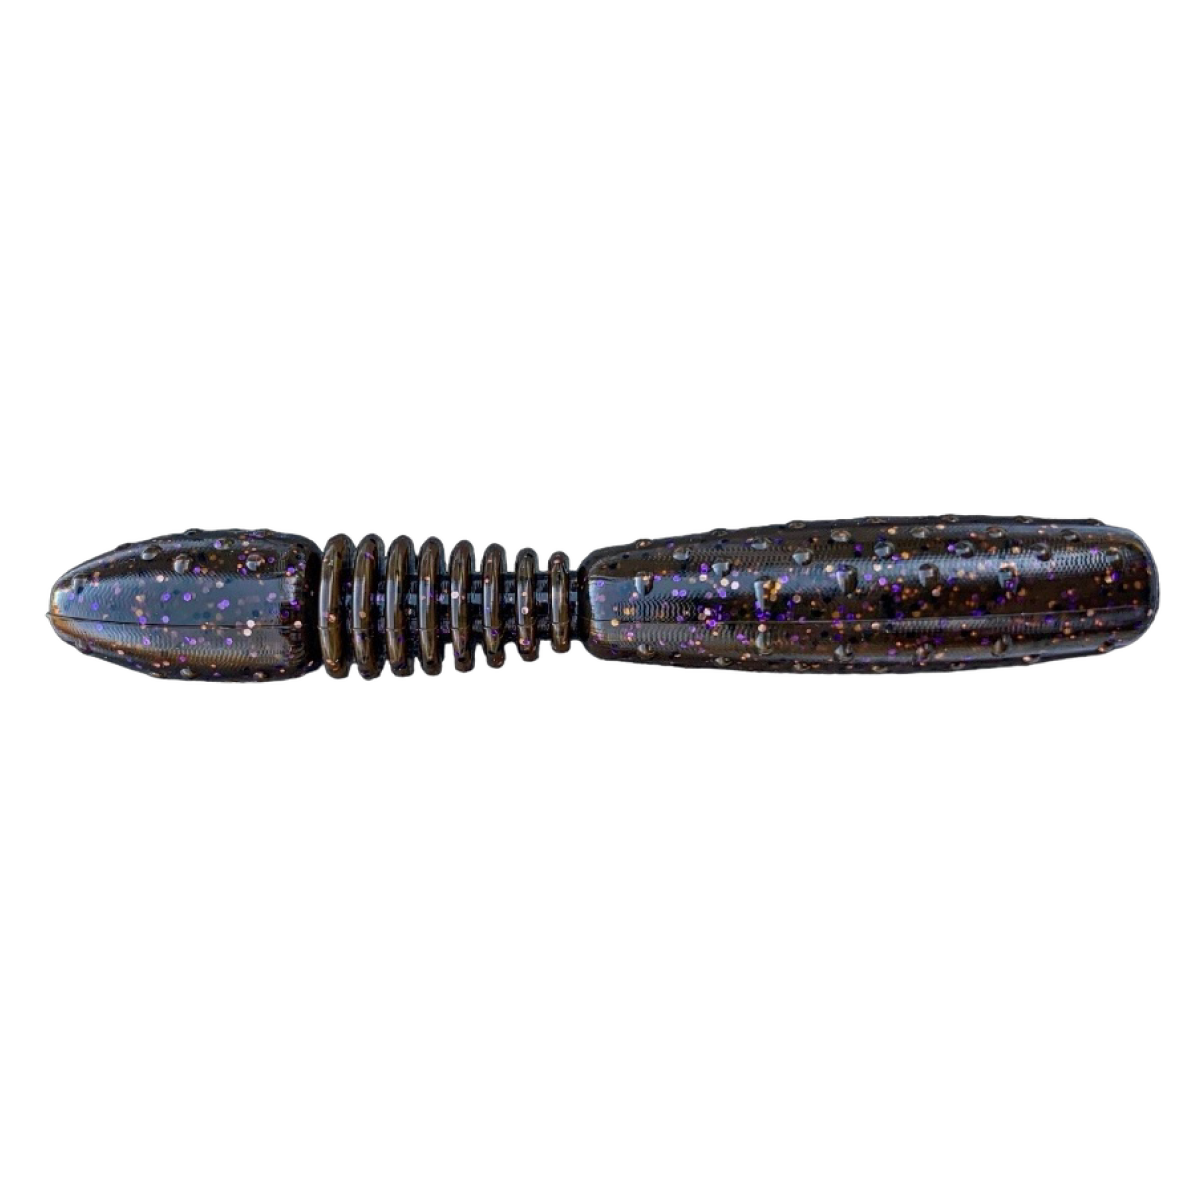 HTW (hollow tip worm) 2.75”